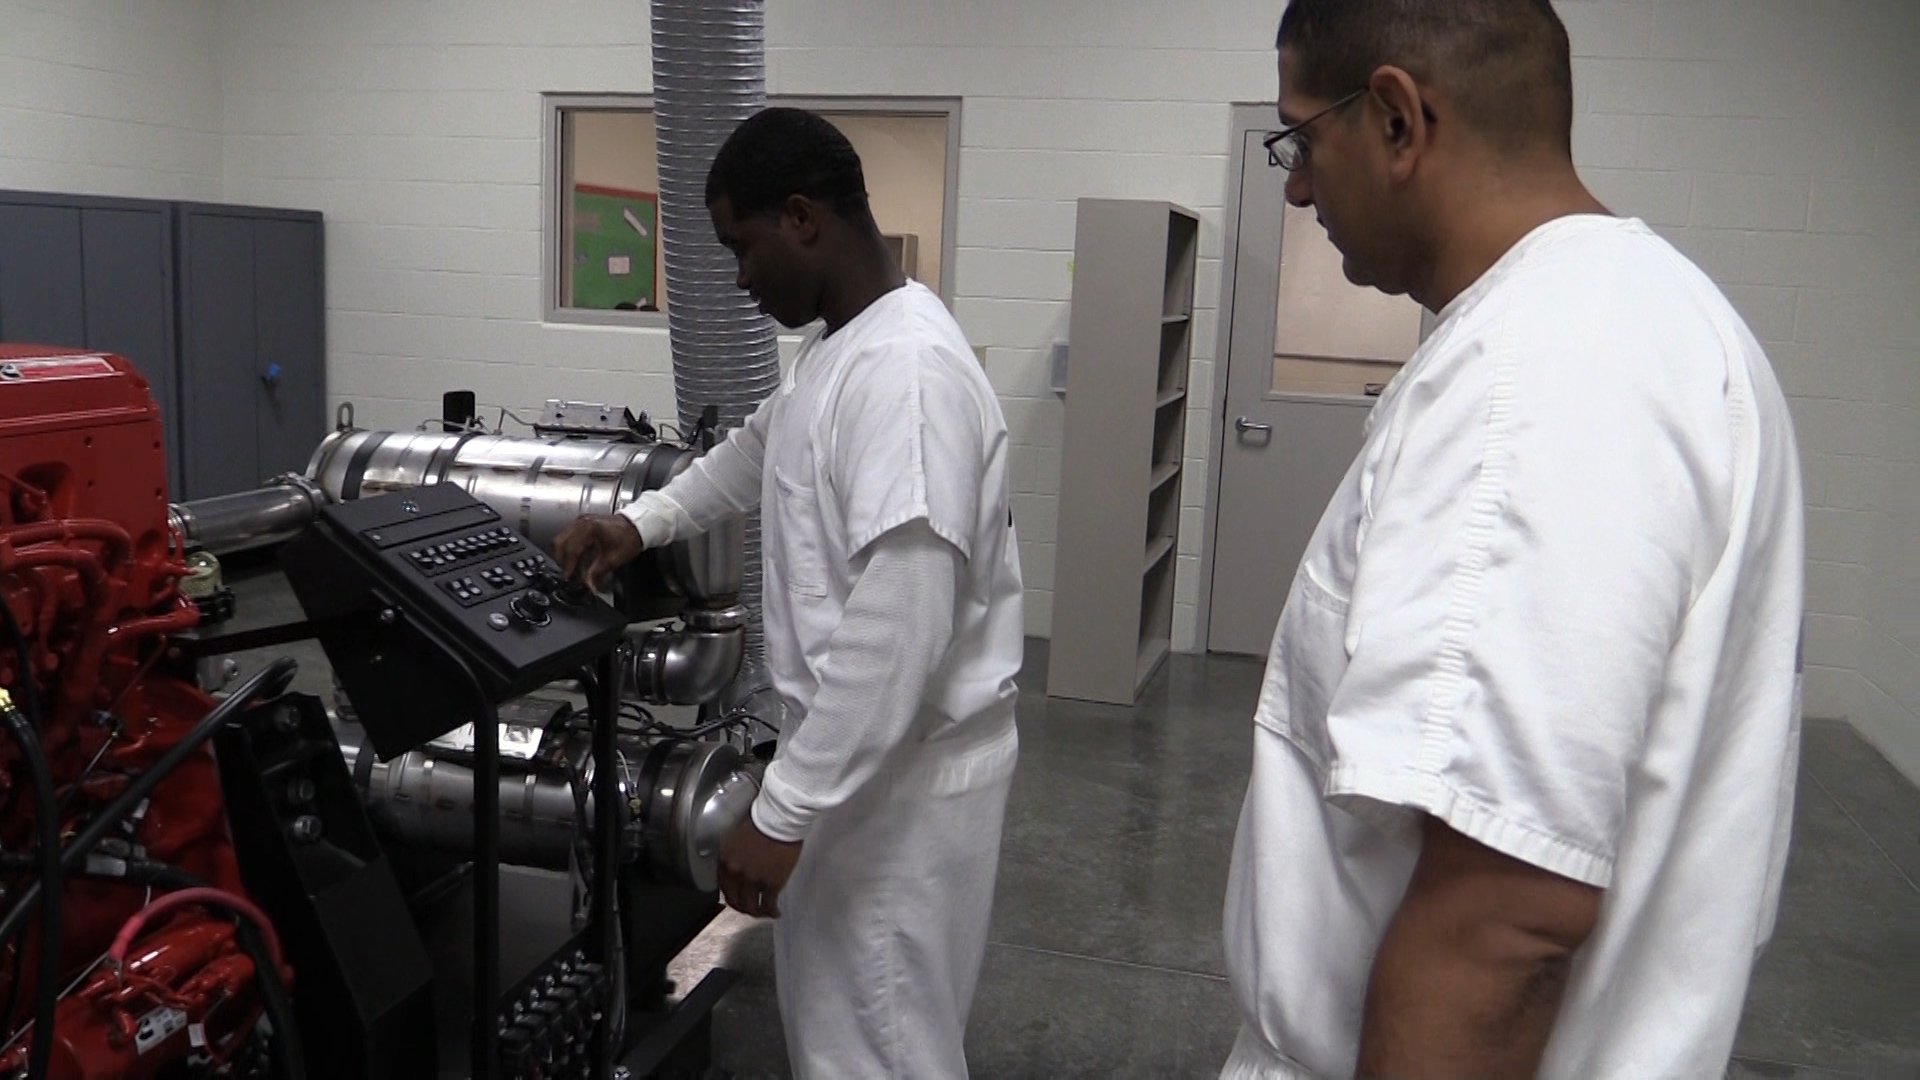 Wheeler Correctional Facility Inmates look to brighten futures 41NBC